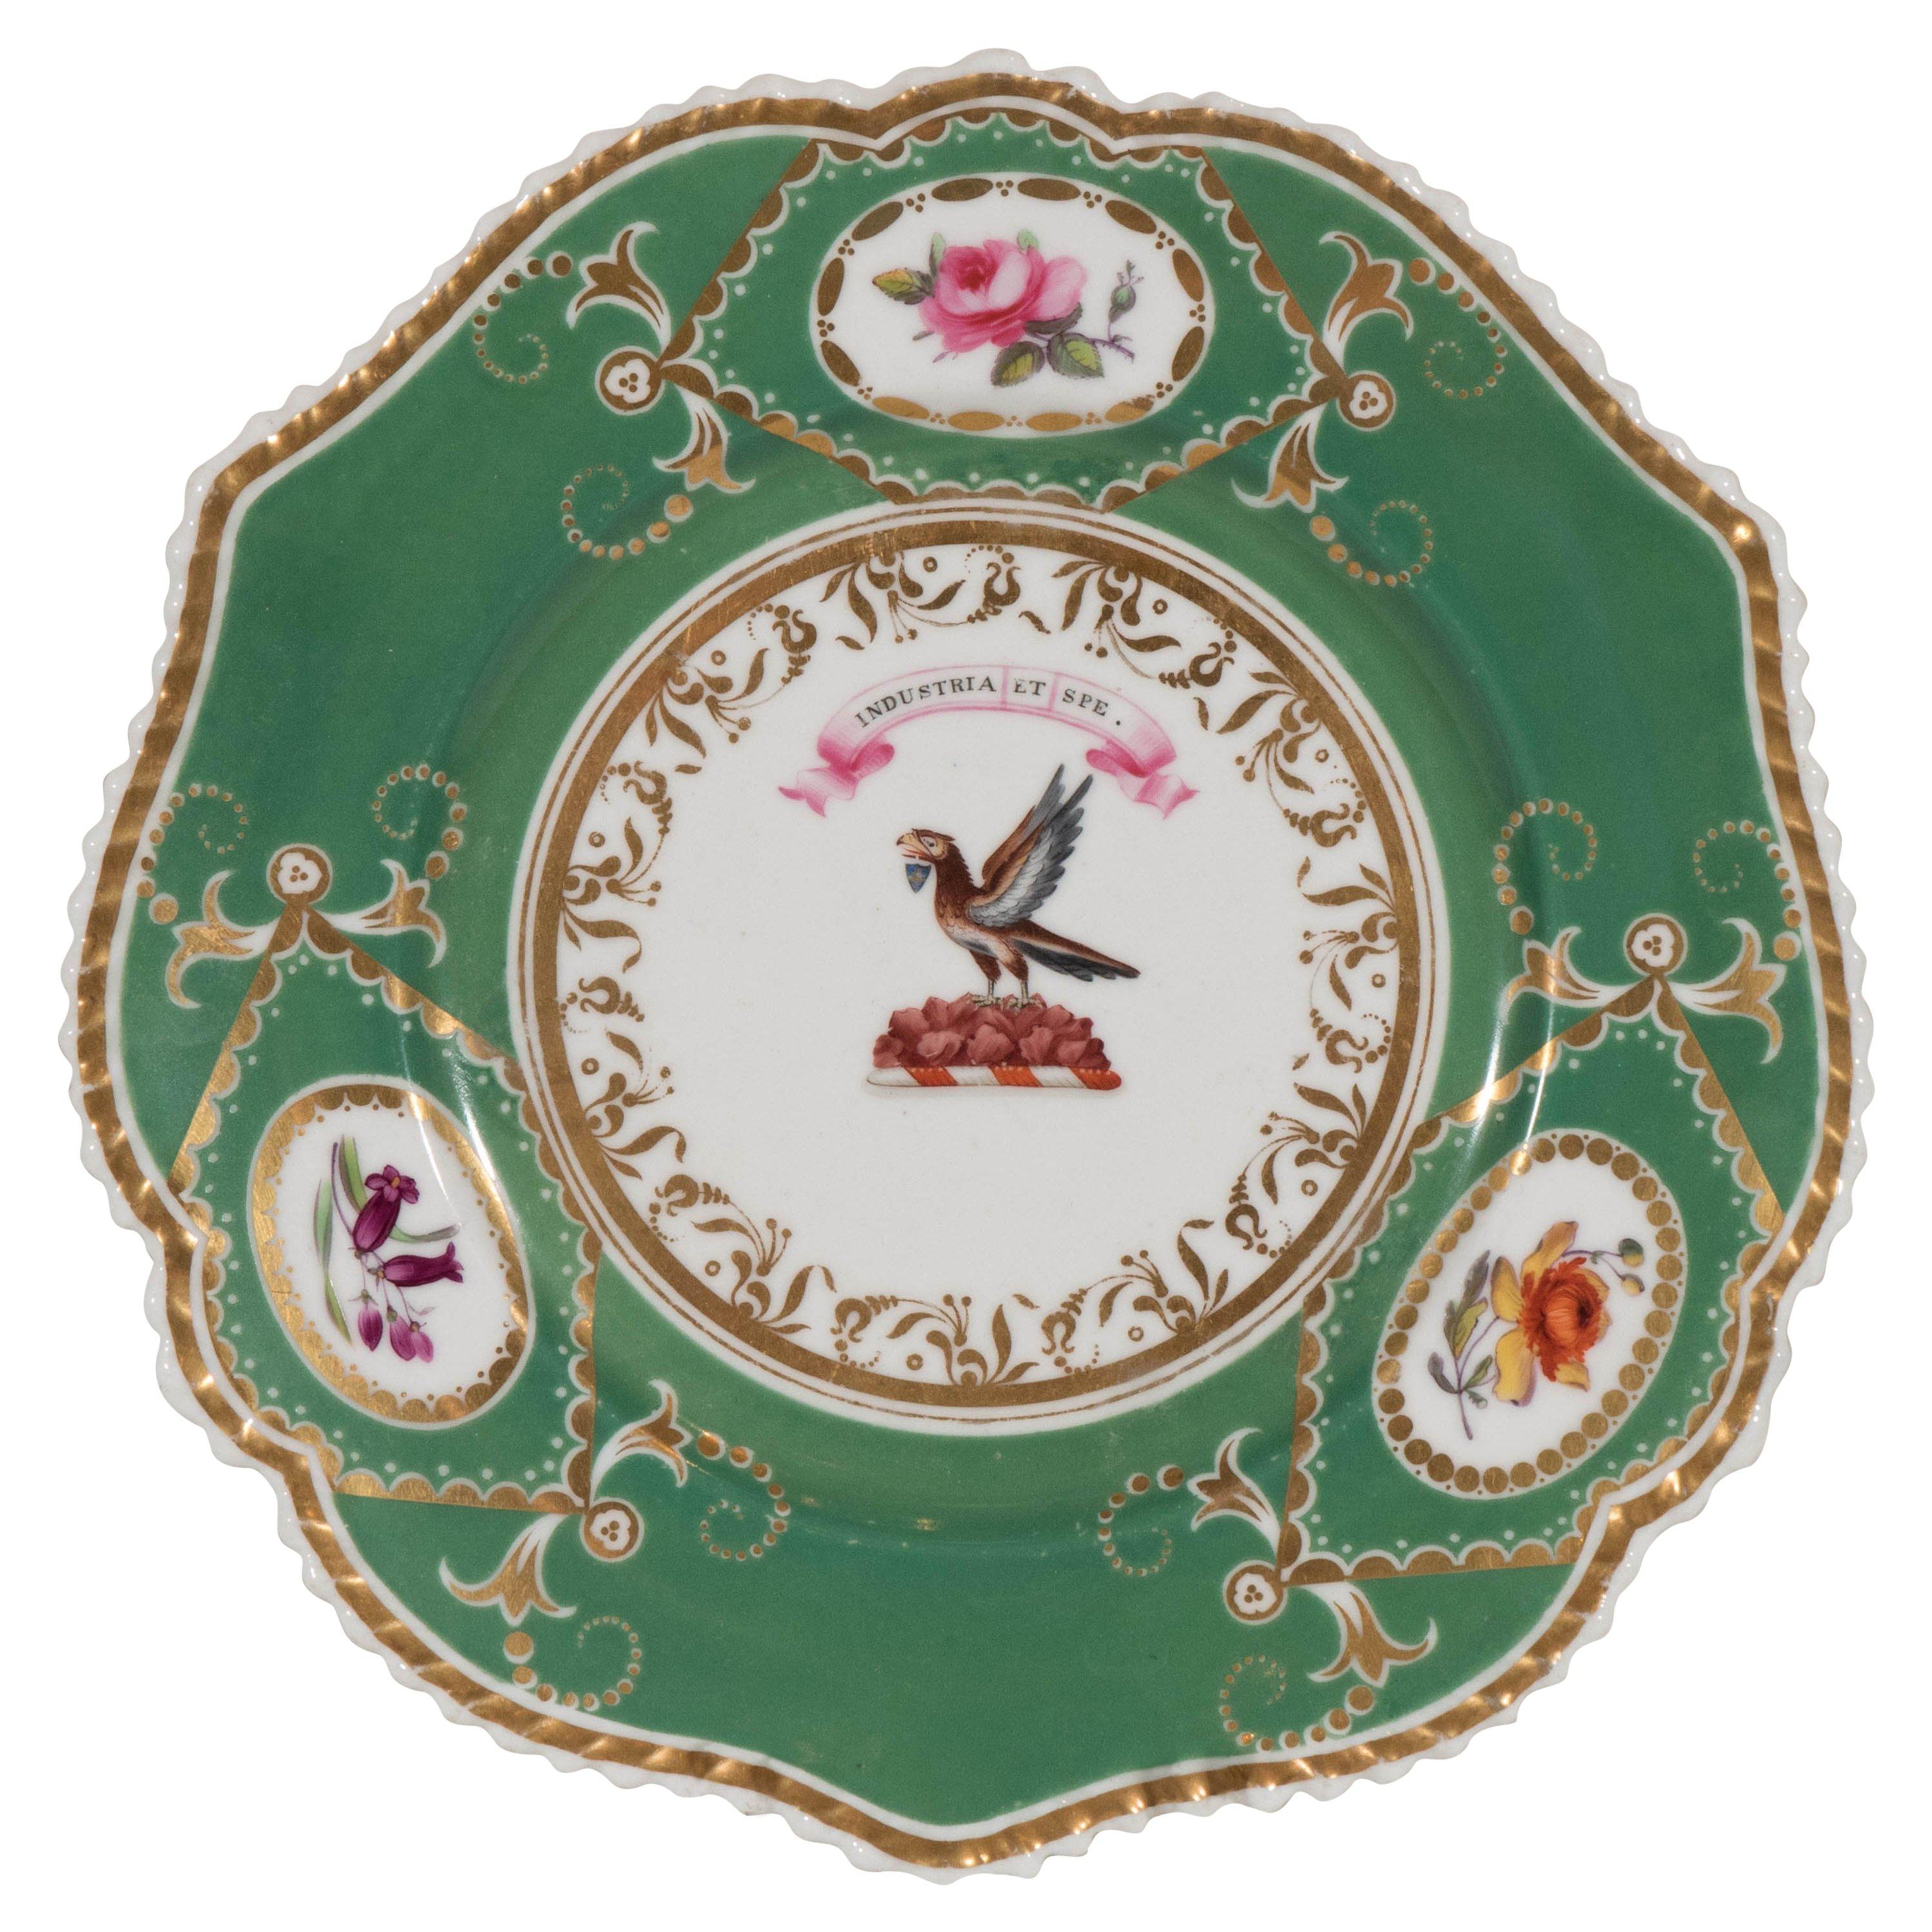  Assiette armoriée en porcelaine anglaise peinte à la main en forme d'aigle par Industry and Hope